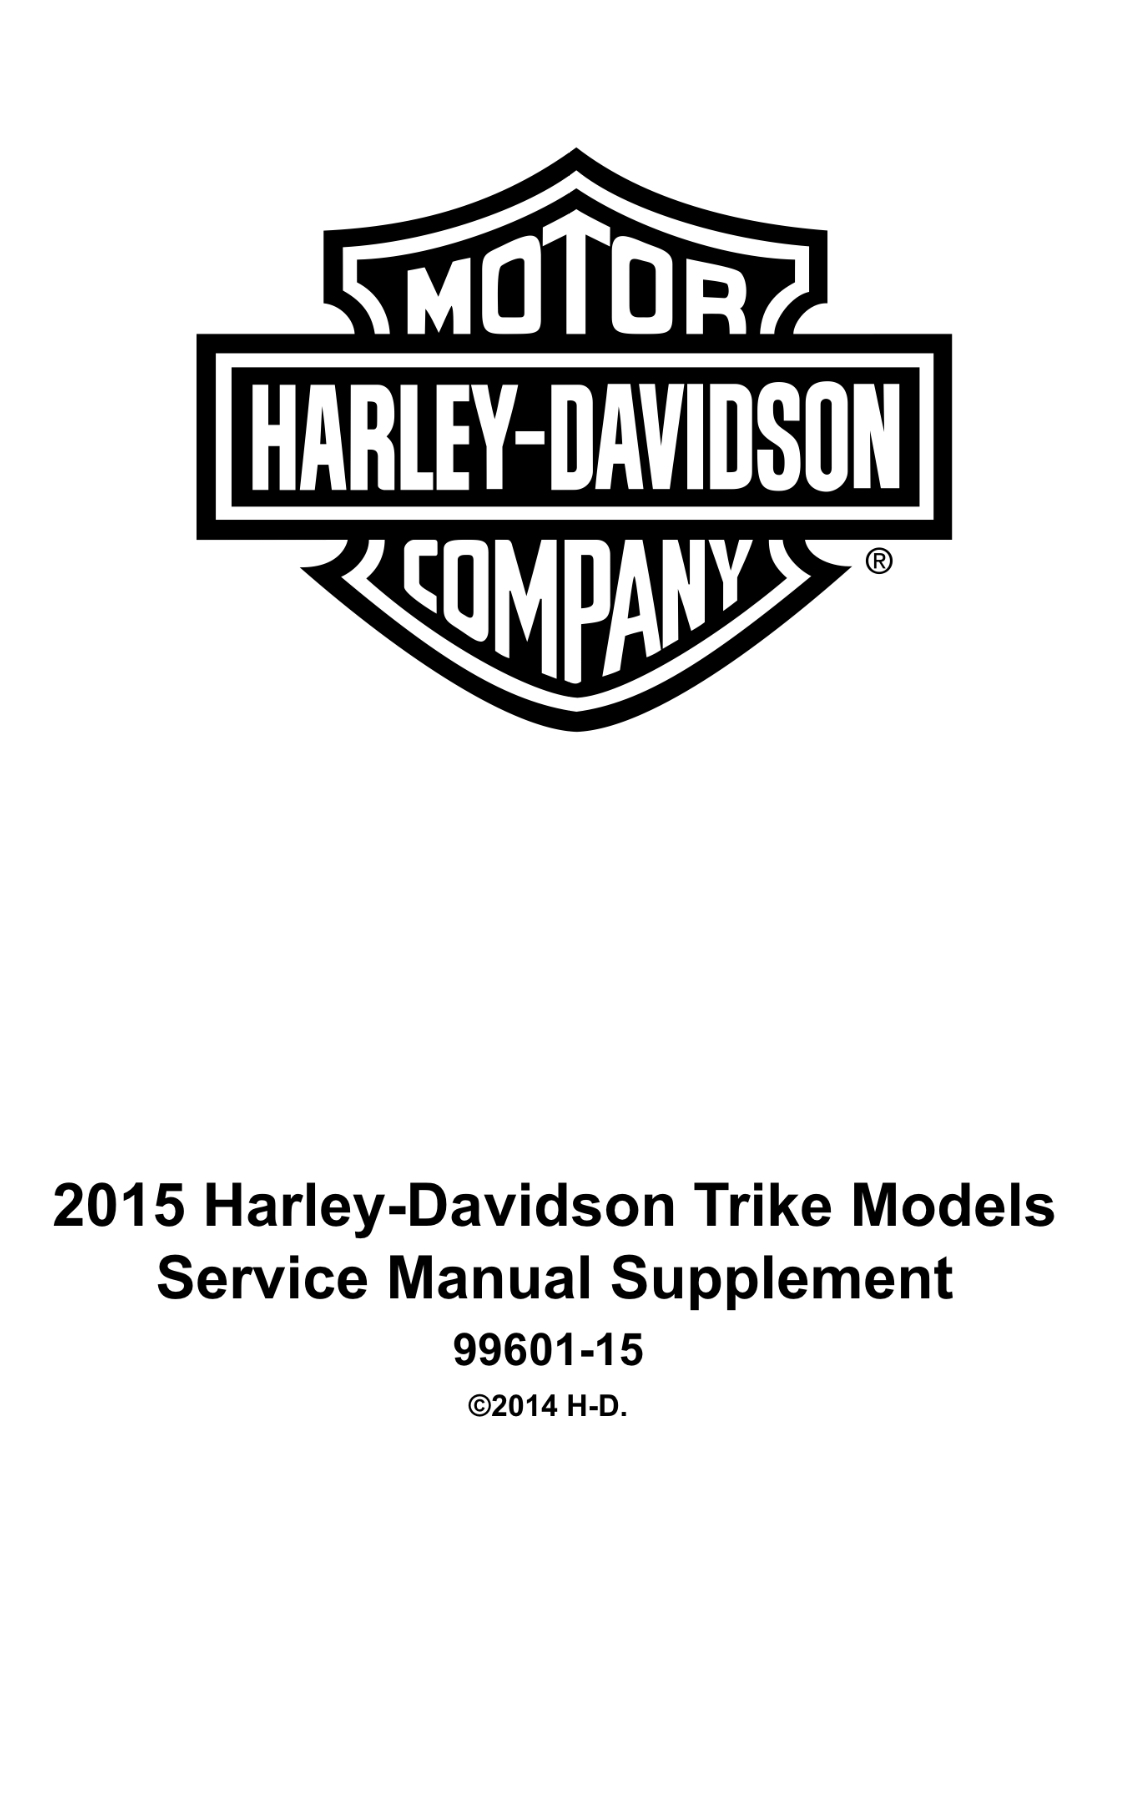 2015哈雷戴维森Touring旅行车型服务和电气诊断手册插图